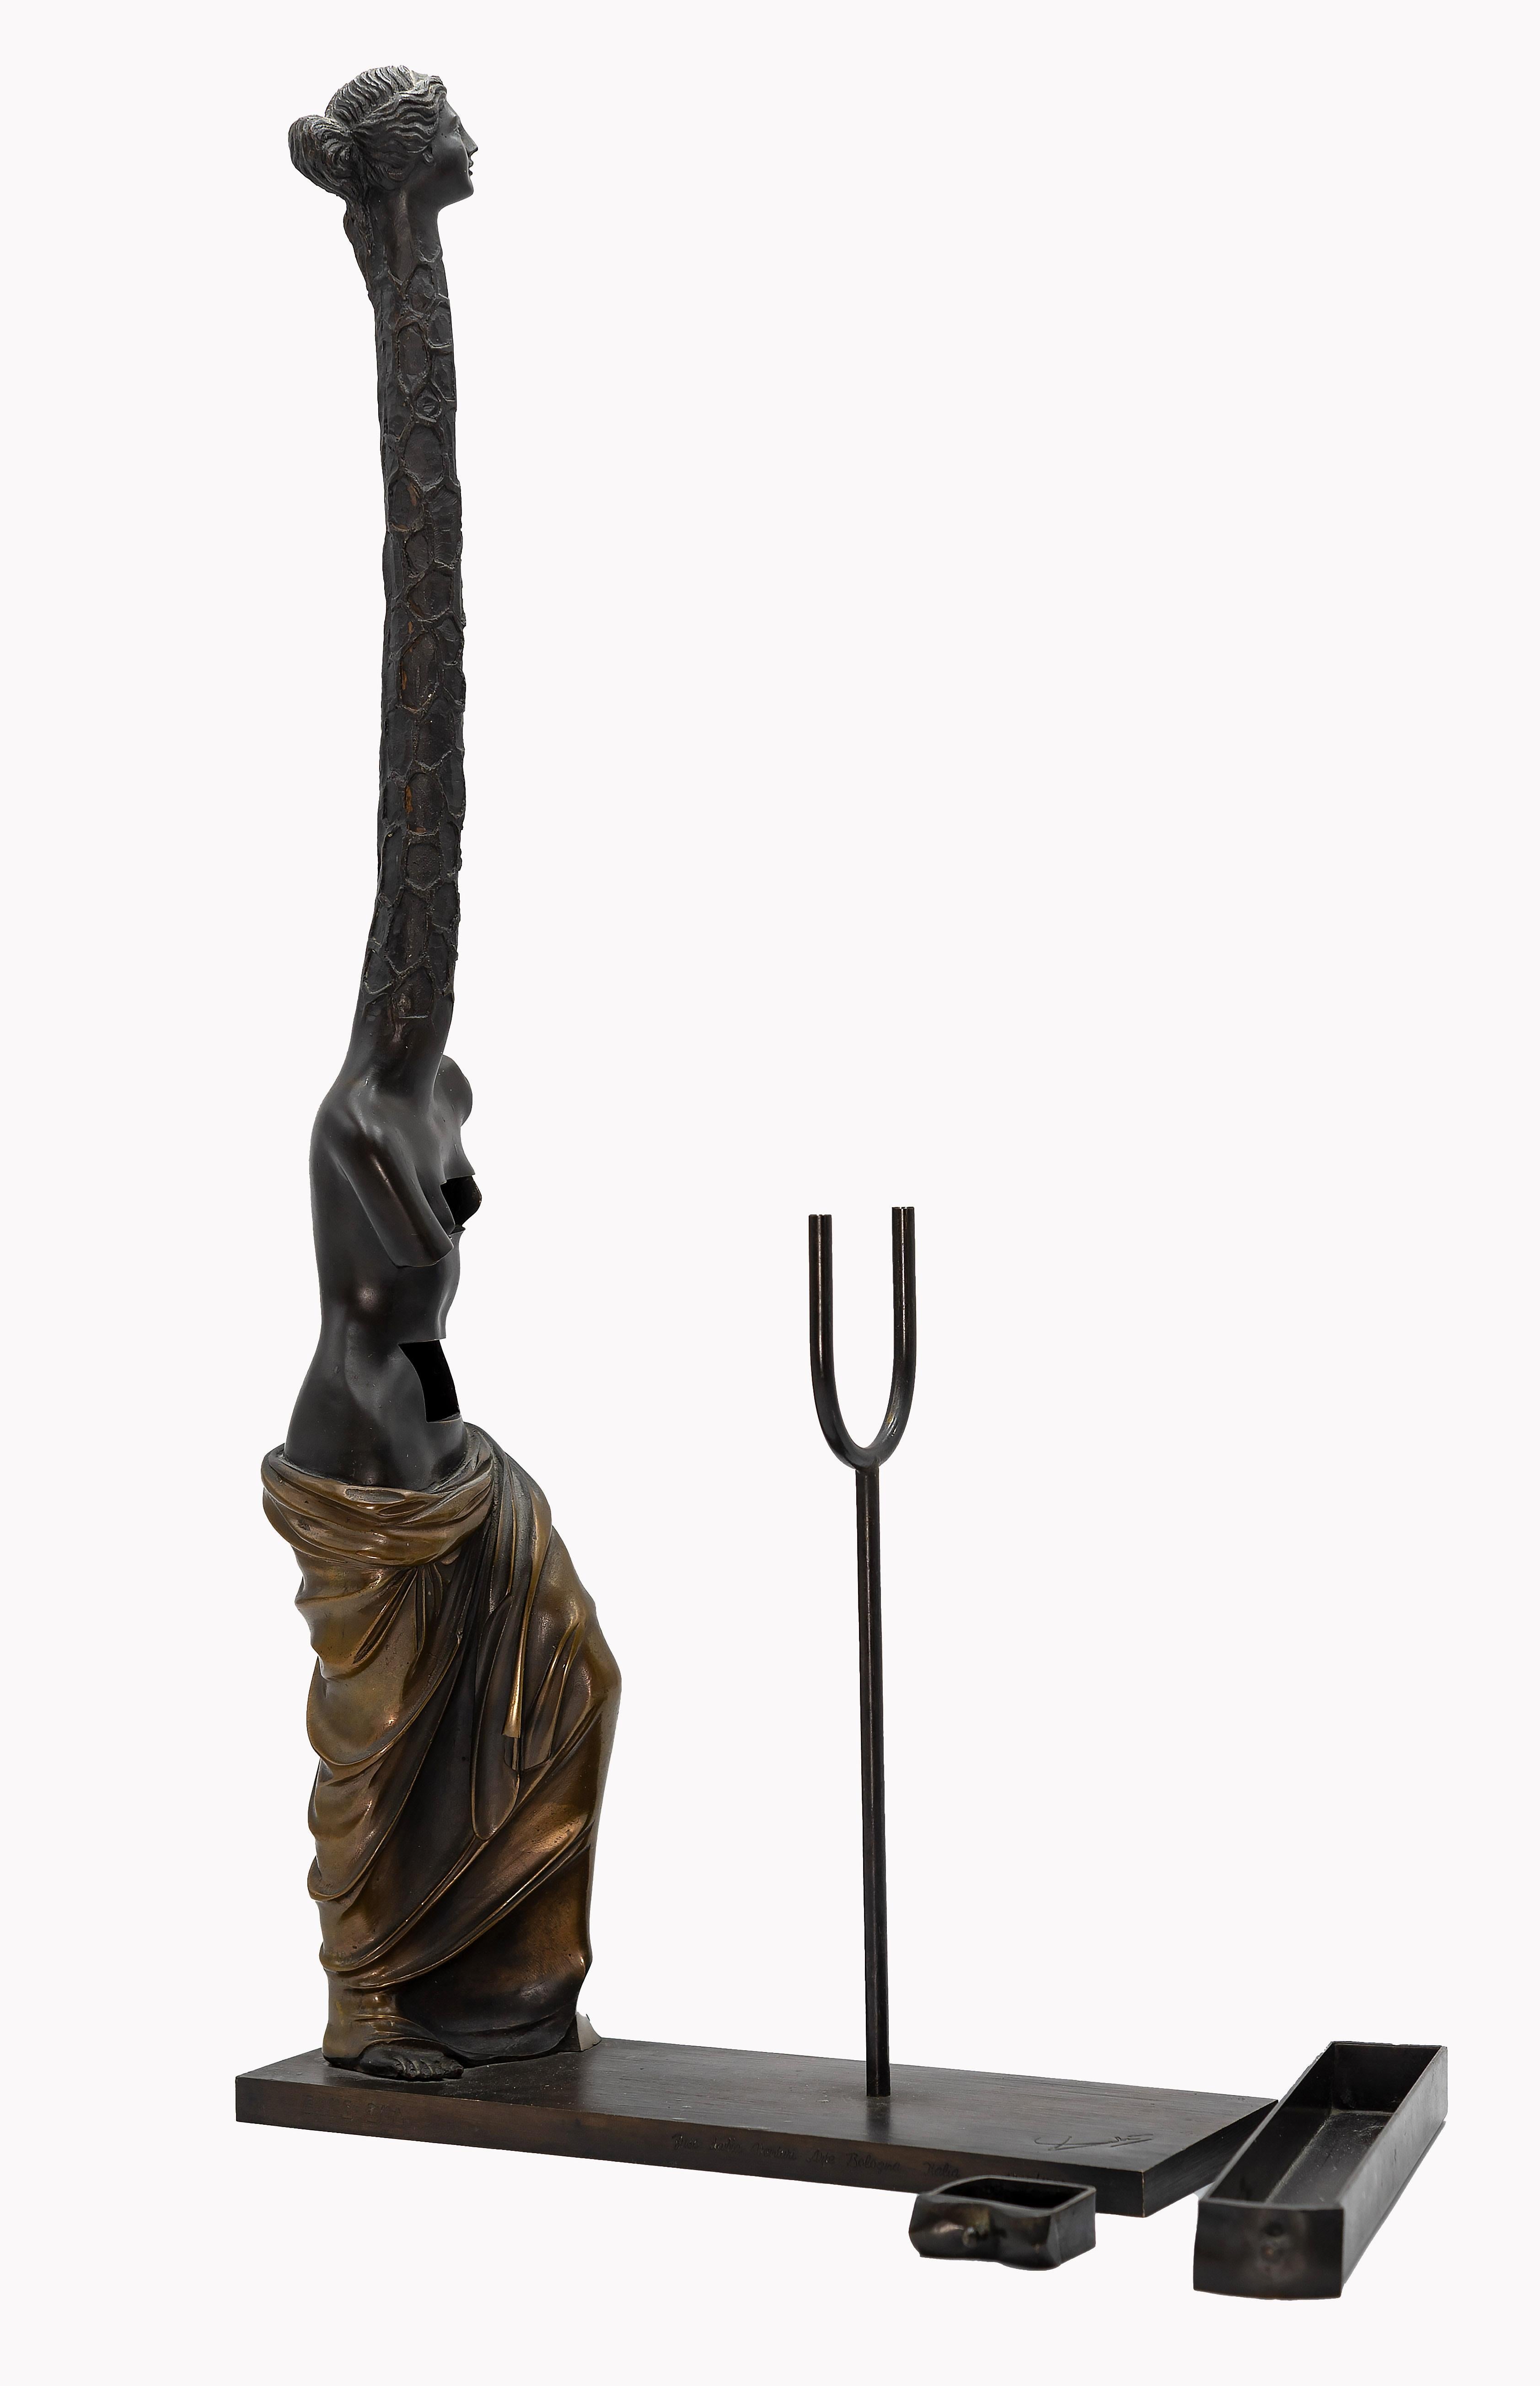 Femme Giraffe - Bronze Sculpture attr. to Salvador Dalì - 1973 - Gold Figurative Sculpture by Salvador Dalí